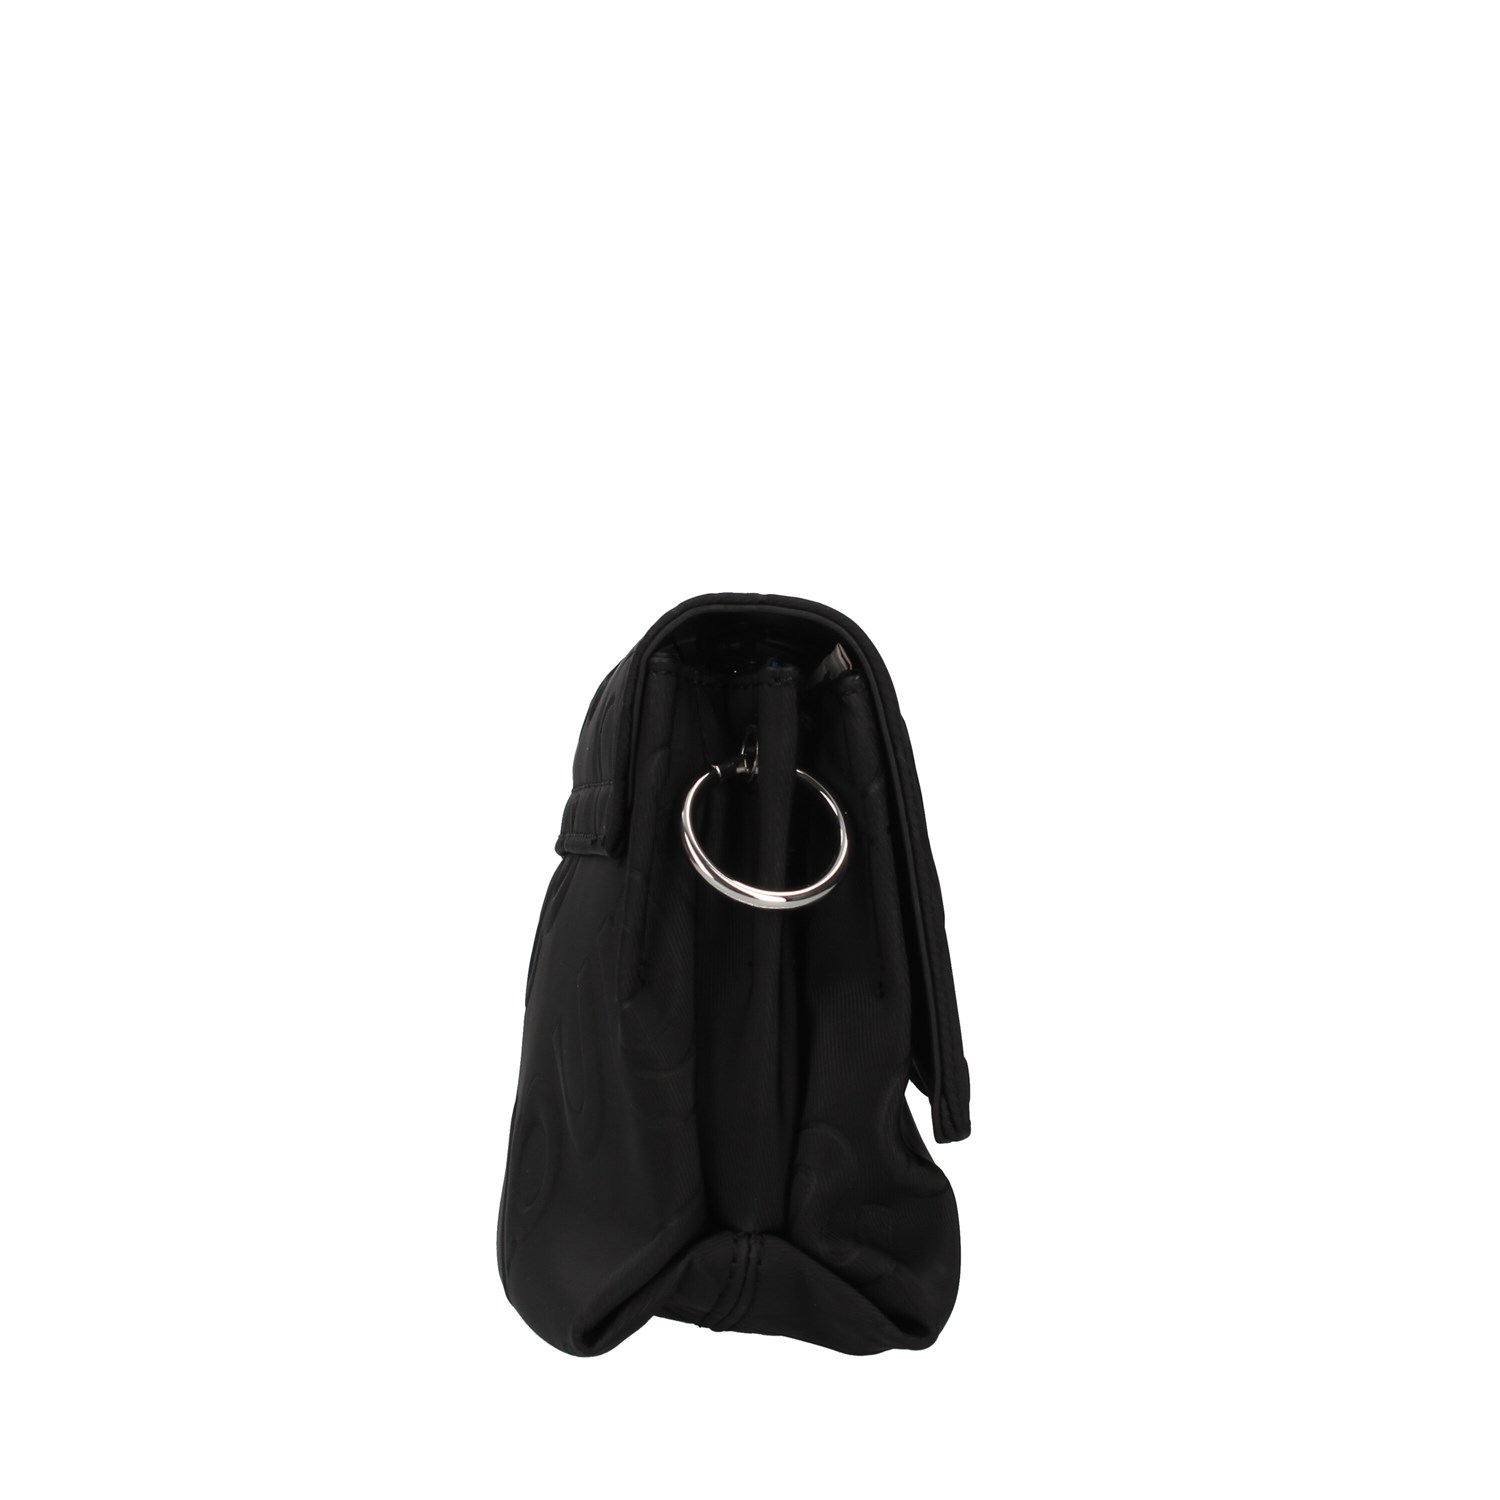 Desigual Bags Accessories Shoulder Strap BLACK 22SAXP73